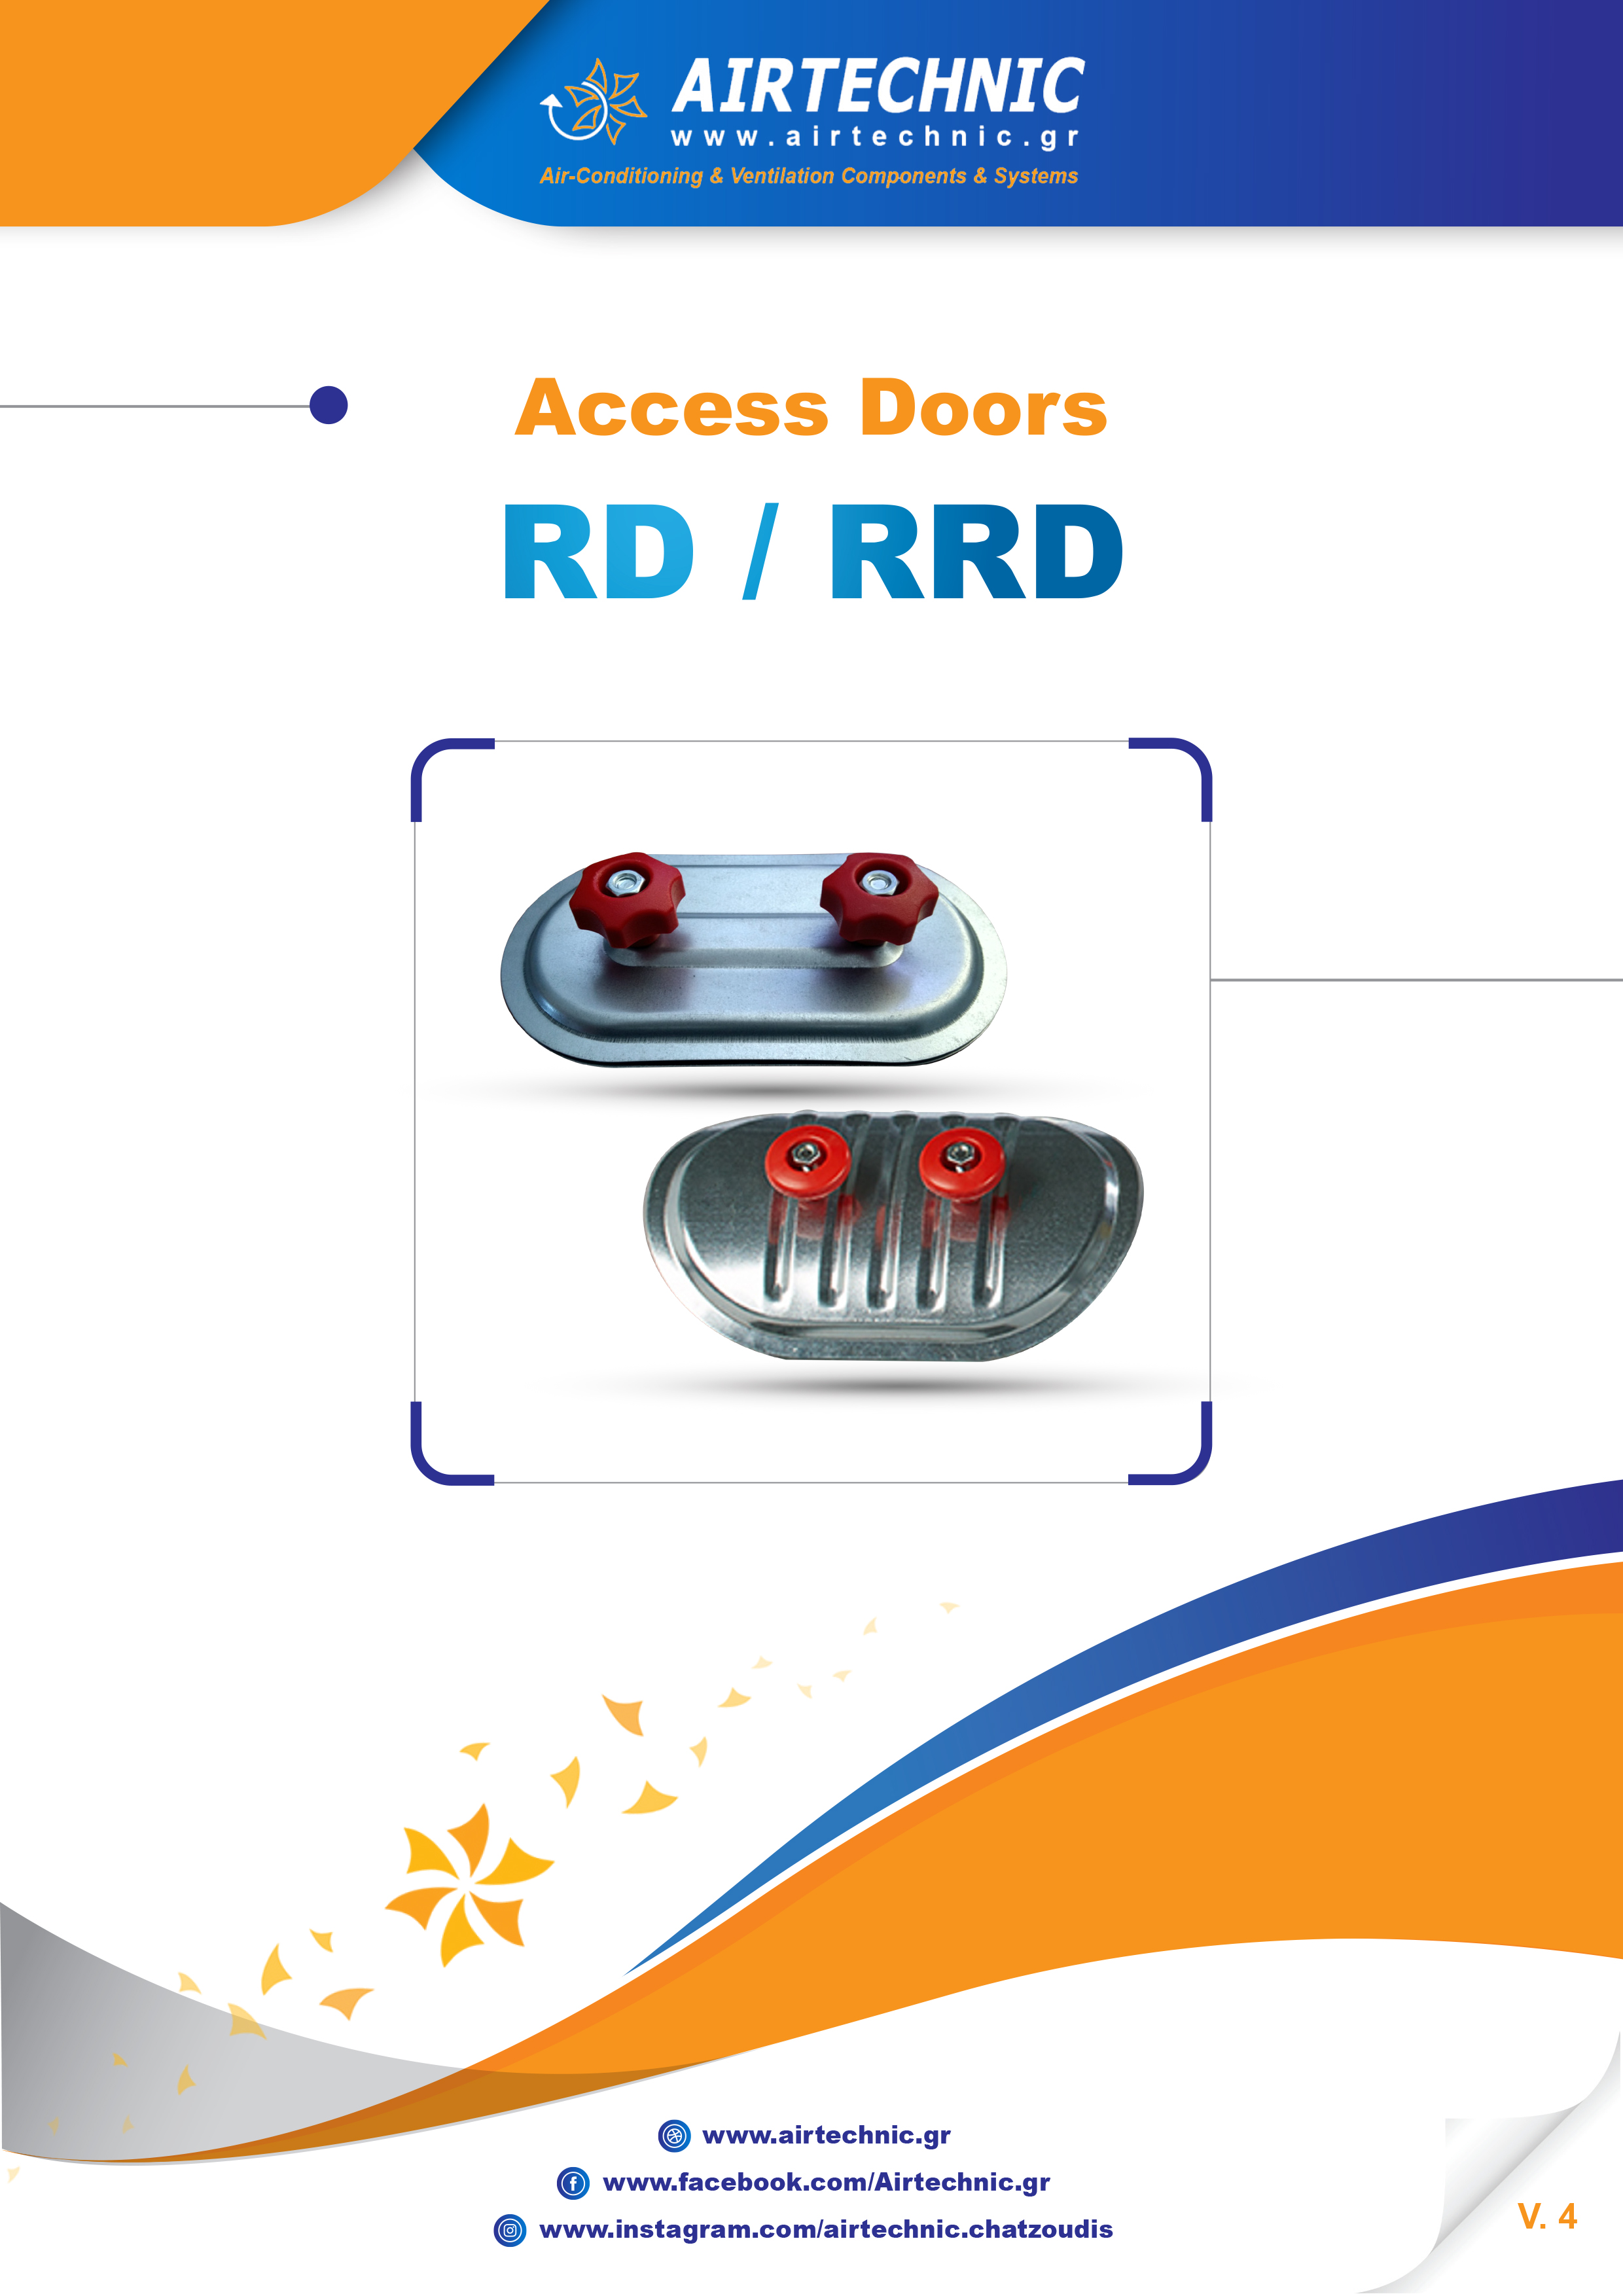 LEAFLET "ACCESS DOORS RD & RRD"